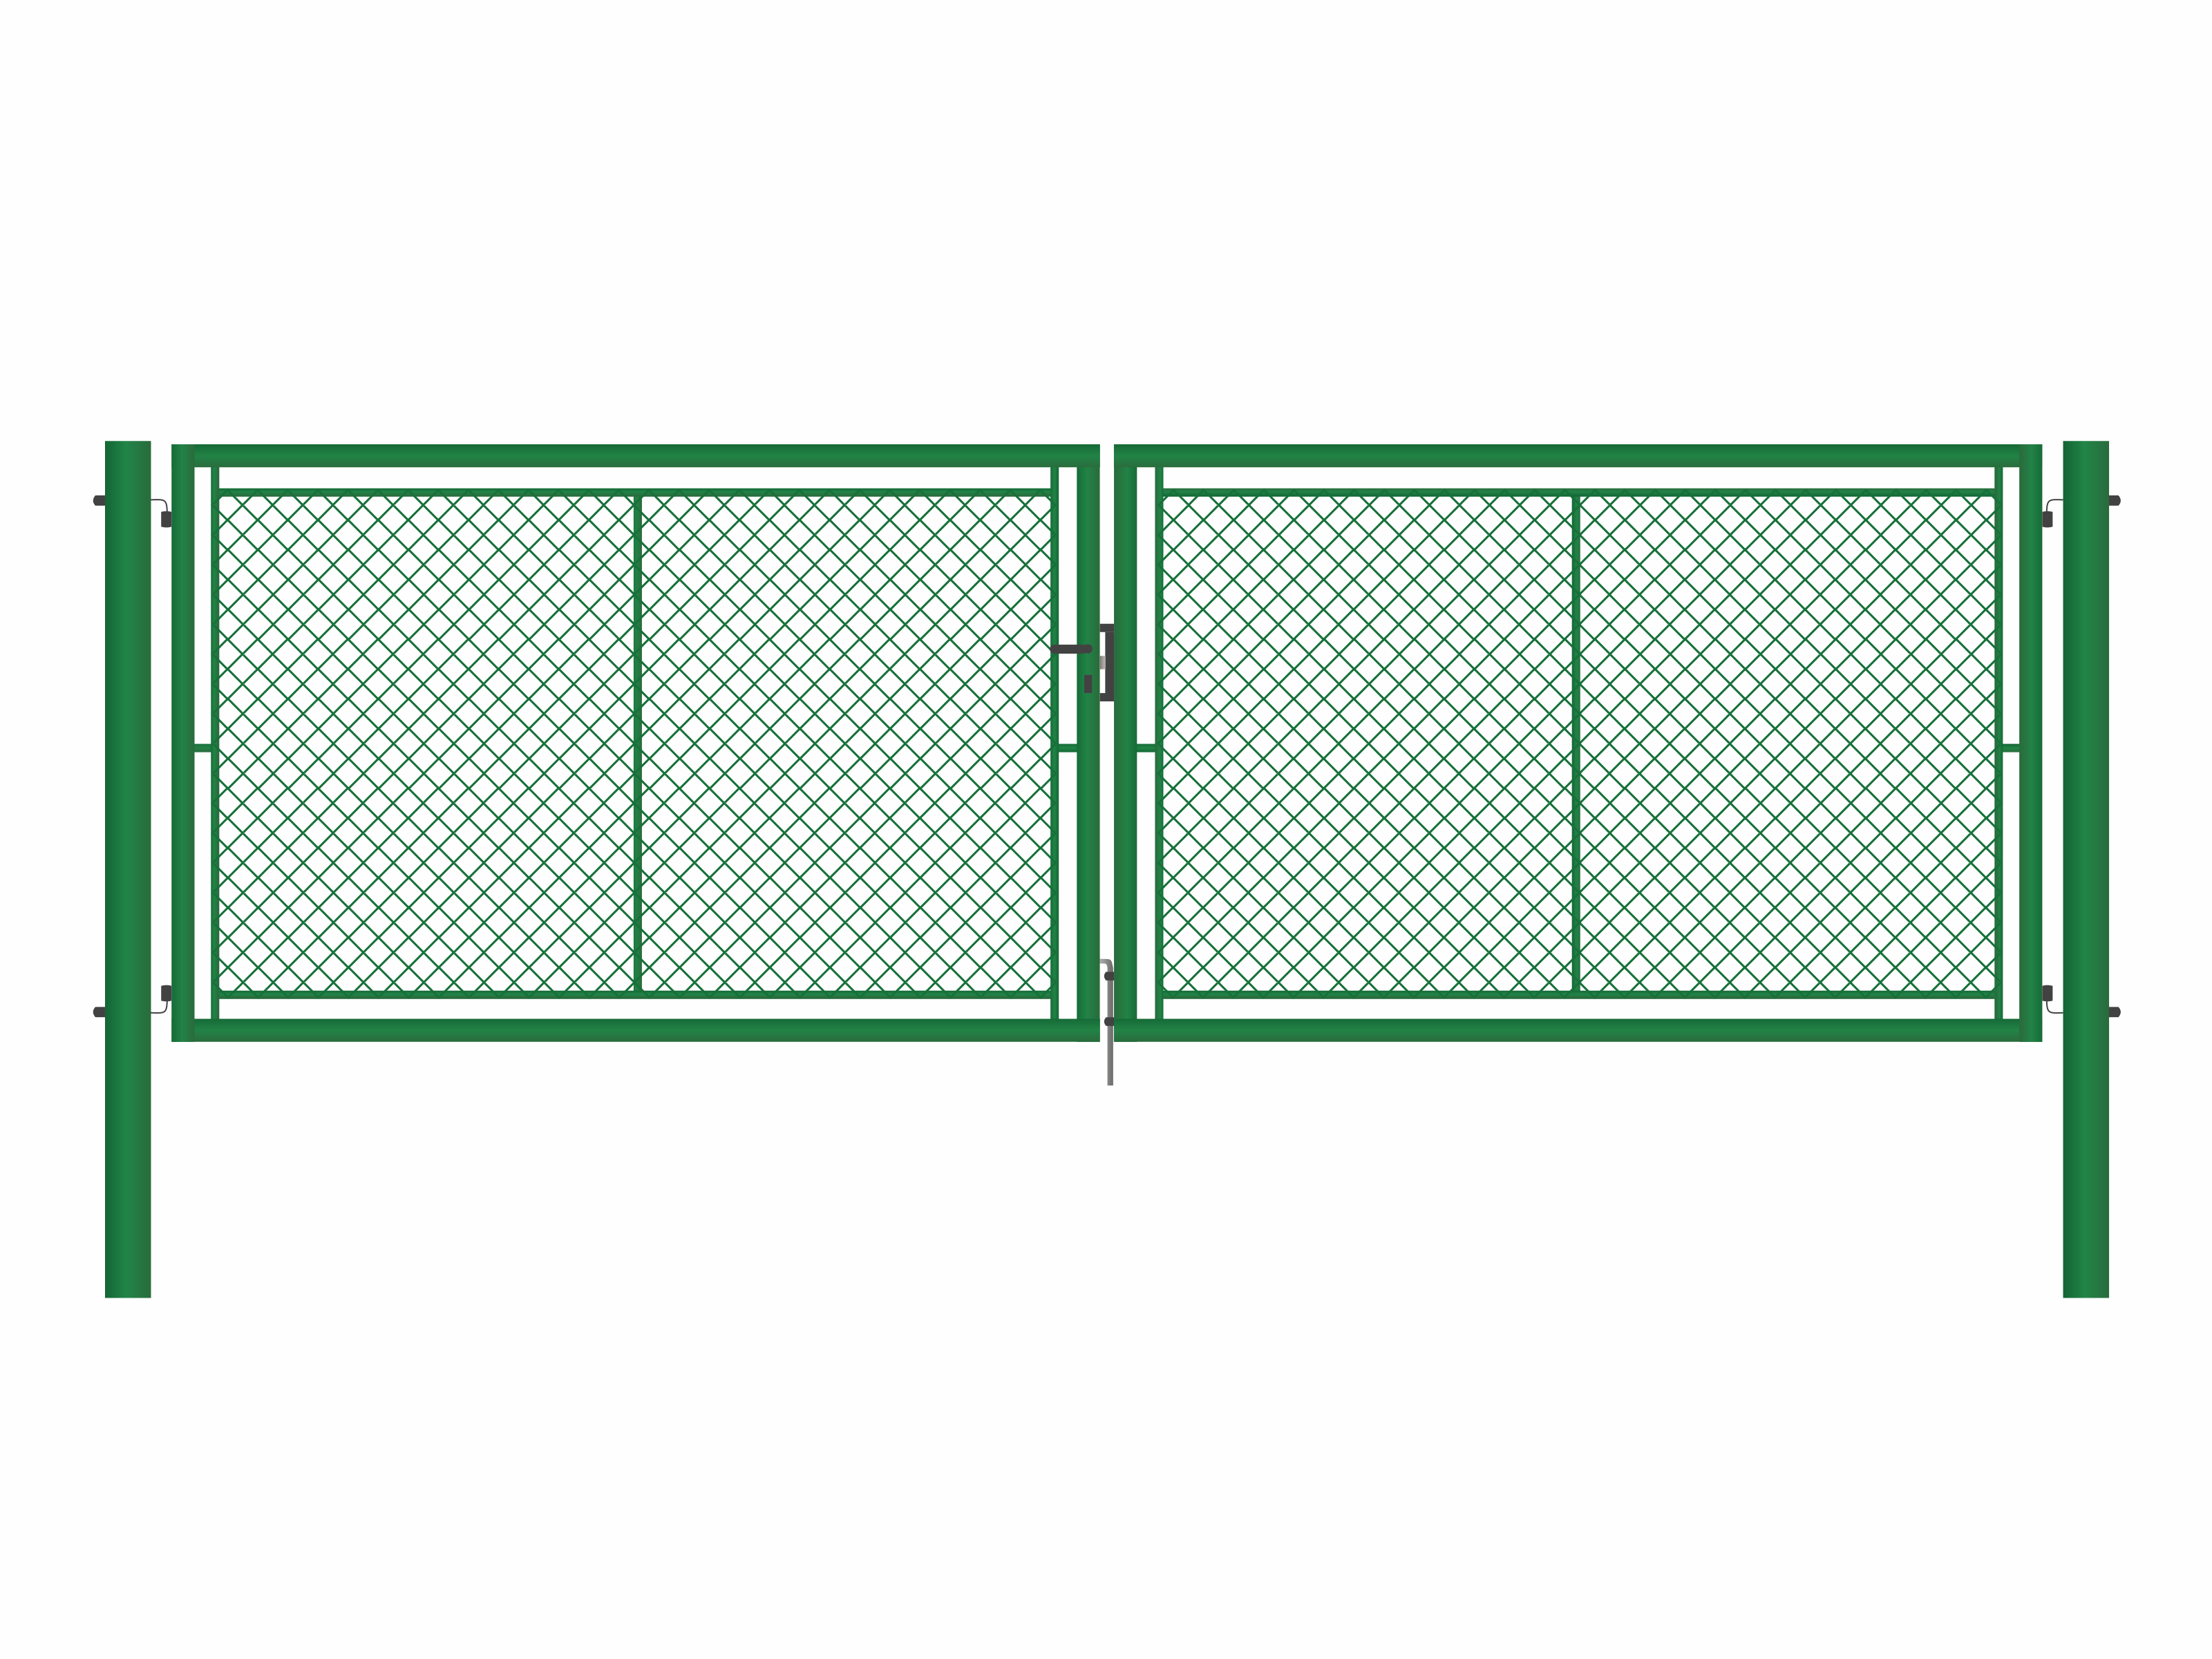 Brána zahradní dvoukřídlá zelená, výška 175 x 500 cm, FAB, s výplní klasického pletiva